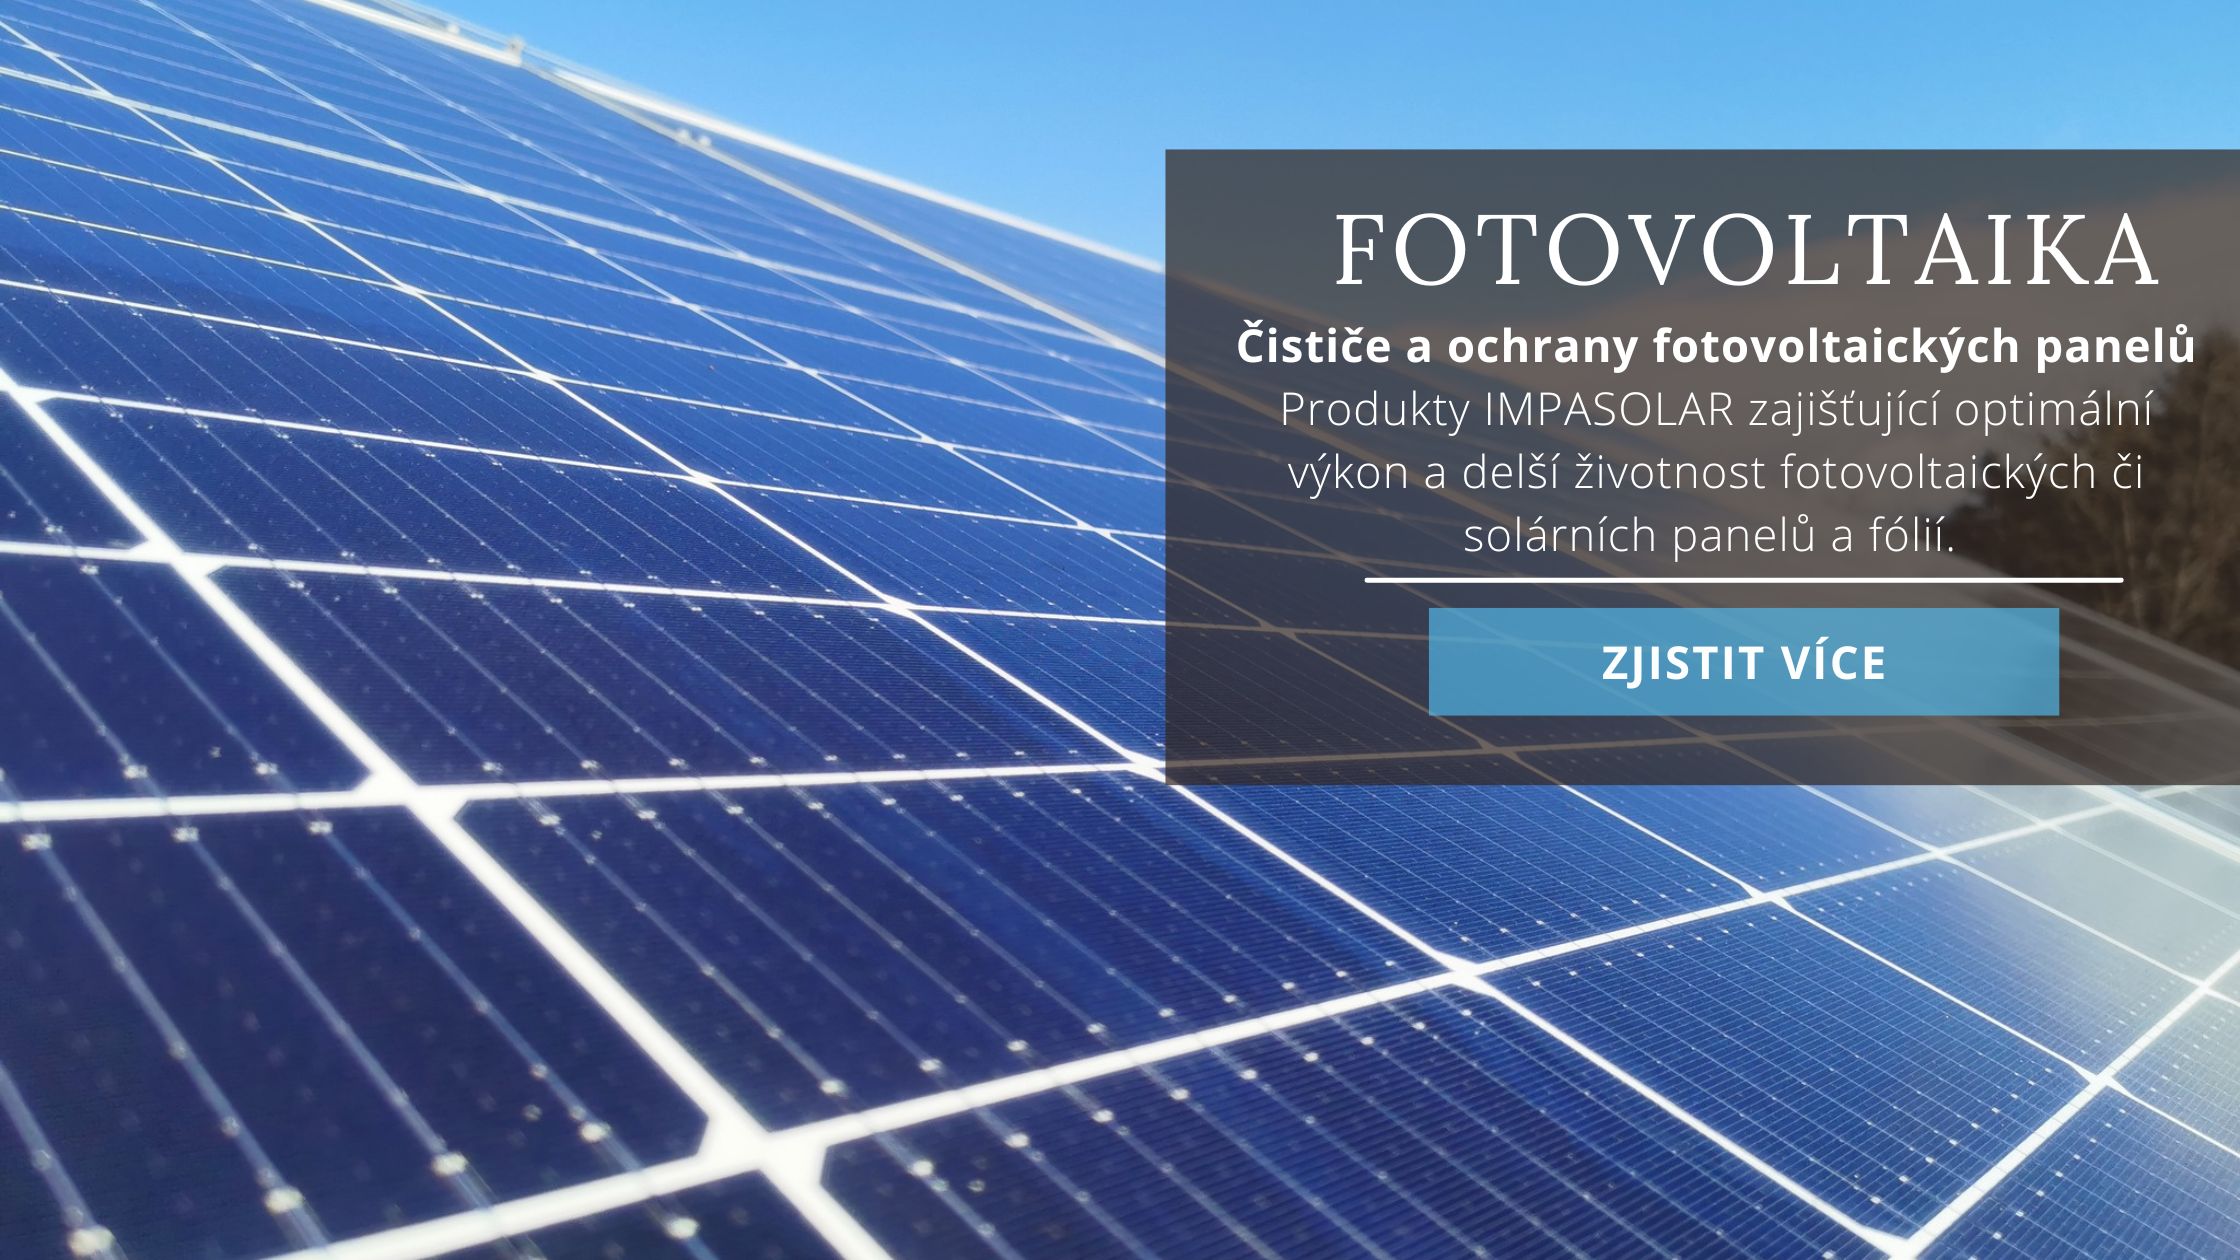 Čističe a ochrany fotovoltaických panelů Impasolar